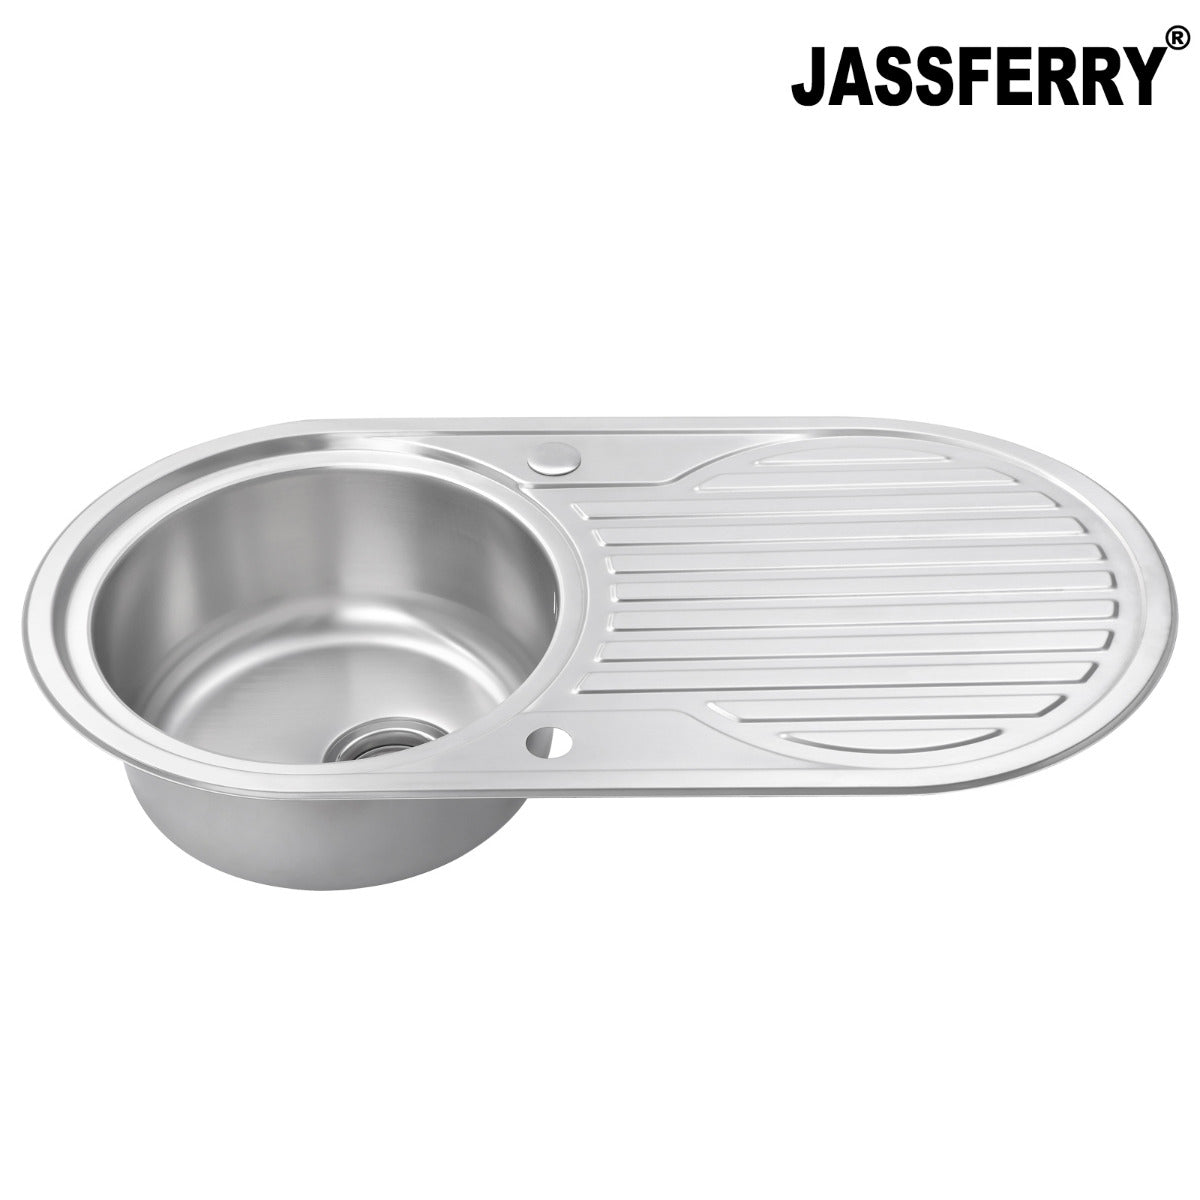 JassferryJASSFERRY Kitchen Sink Stainless Steel Single Circle Bowl Reversible Round DrainerKitchen Sinks